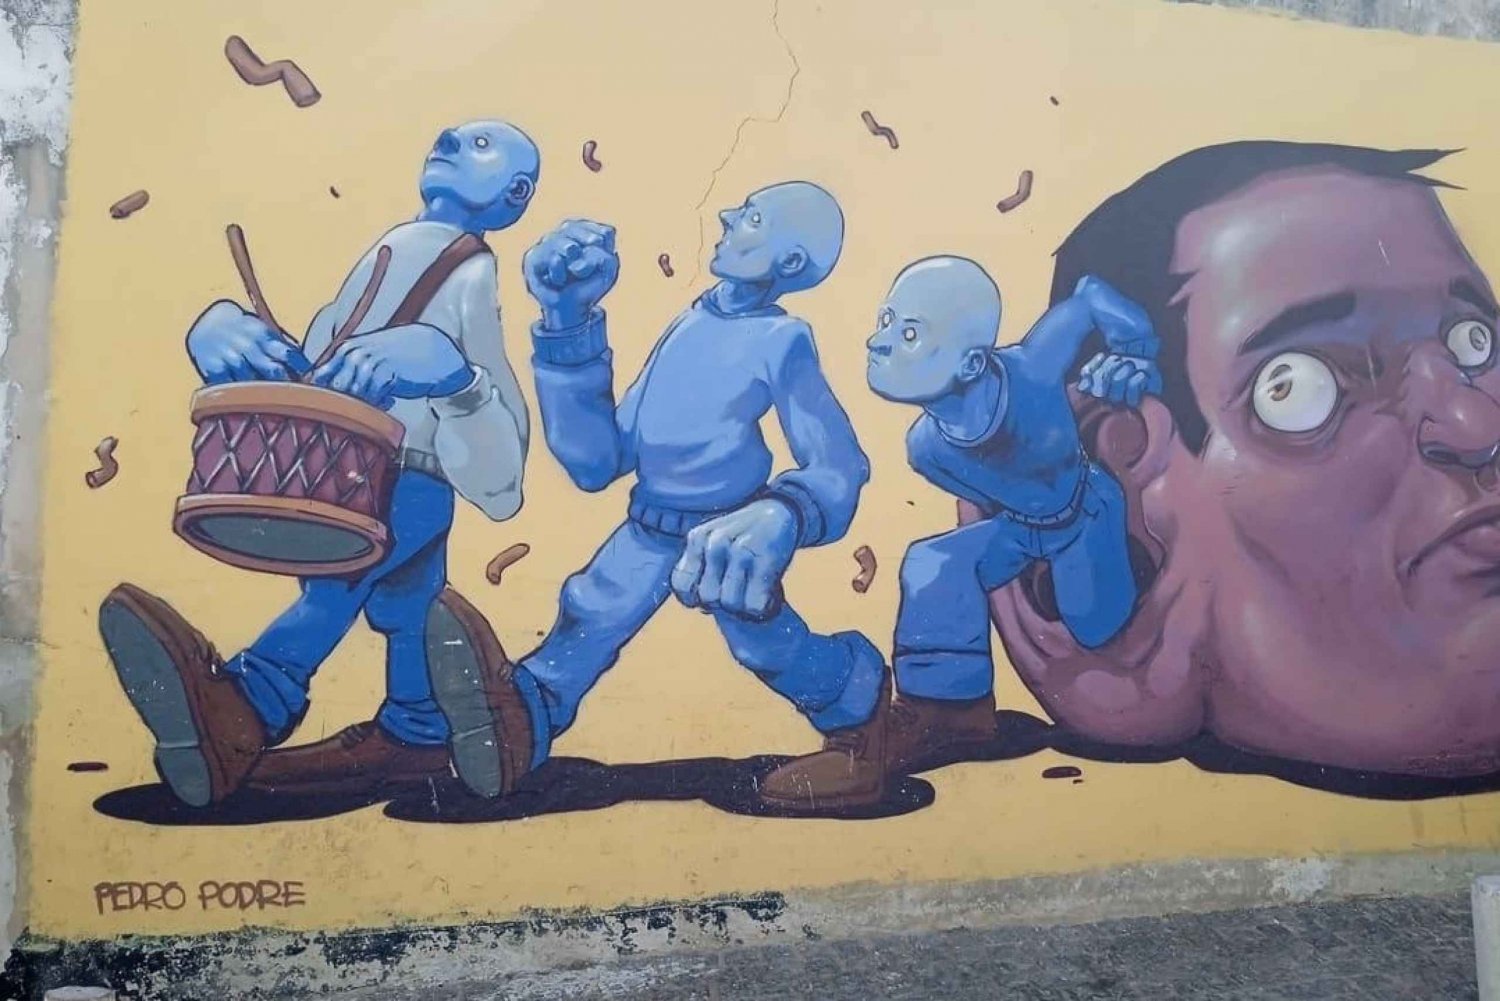 Lagos Street Art: Caccia all'avventura in app